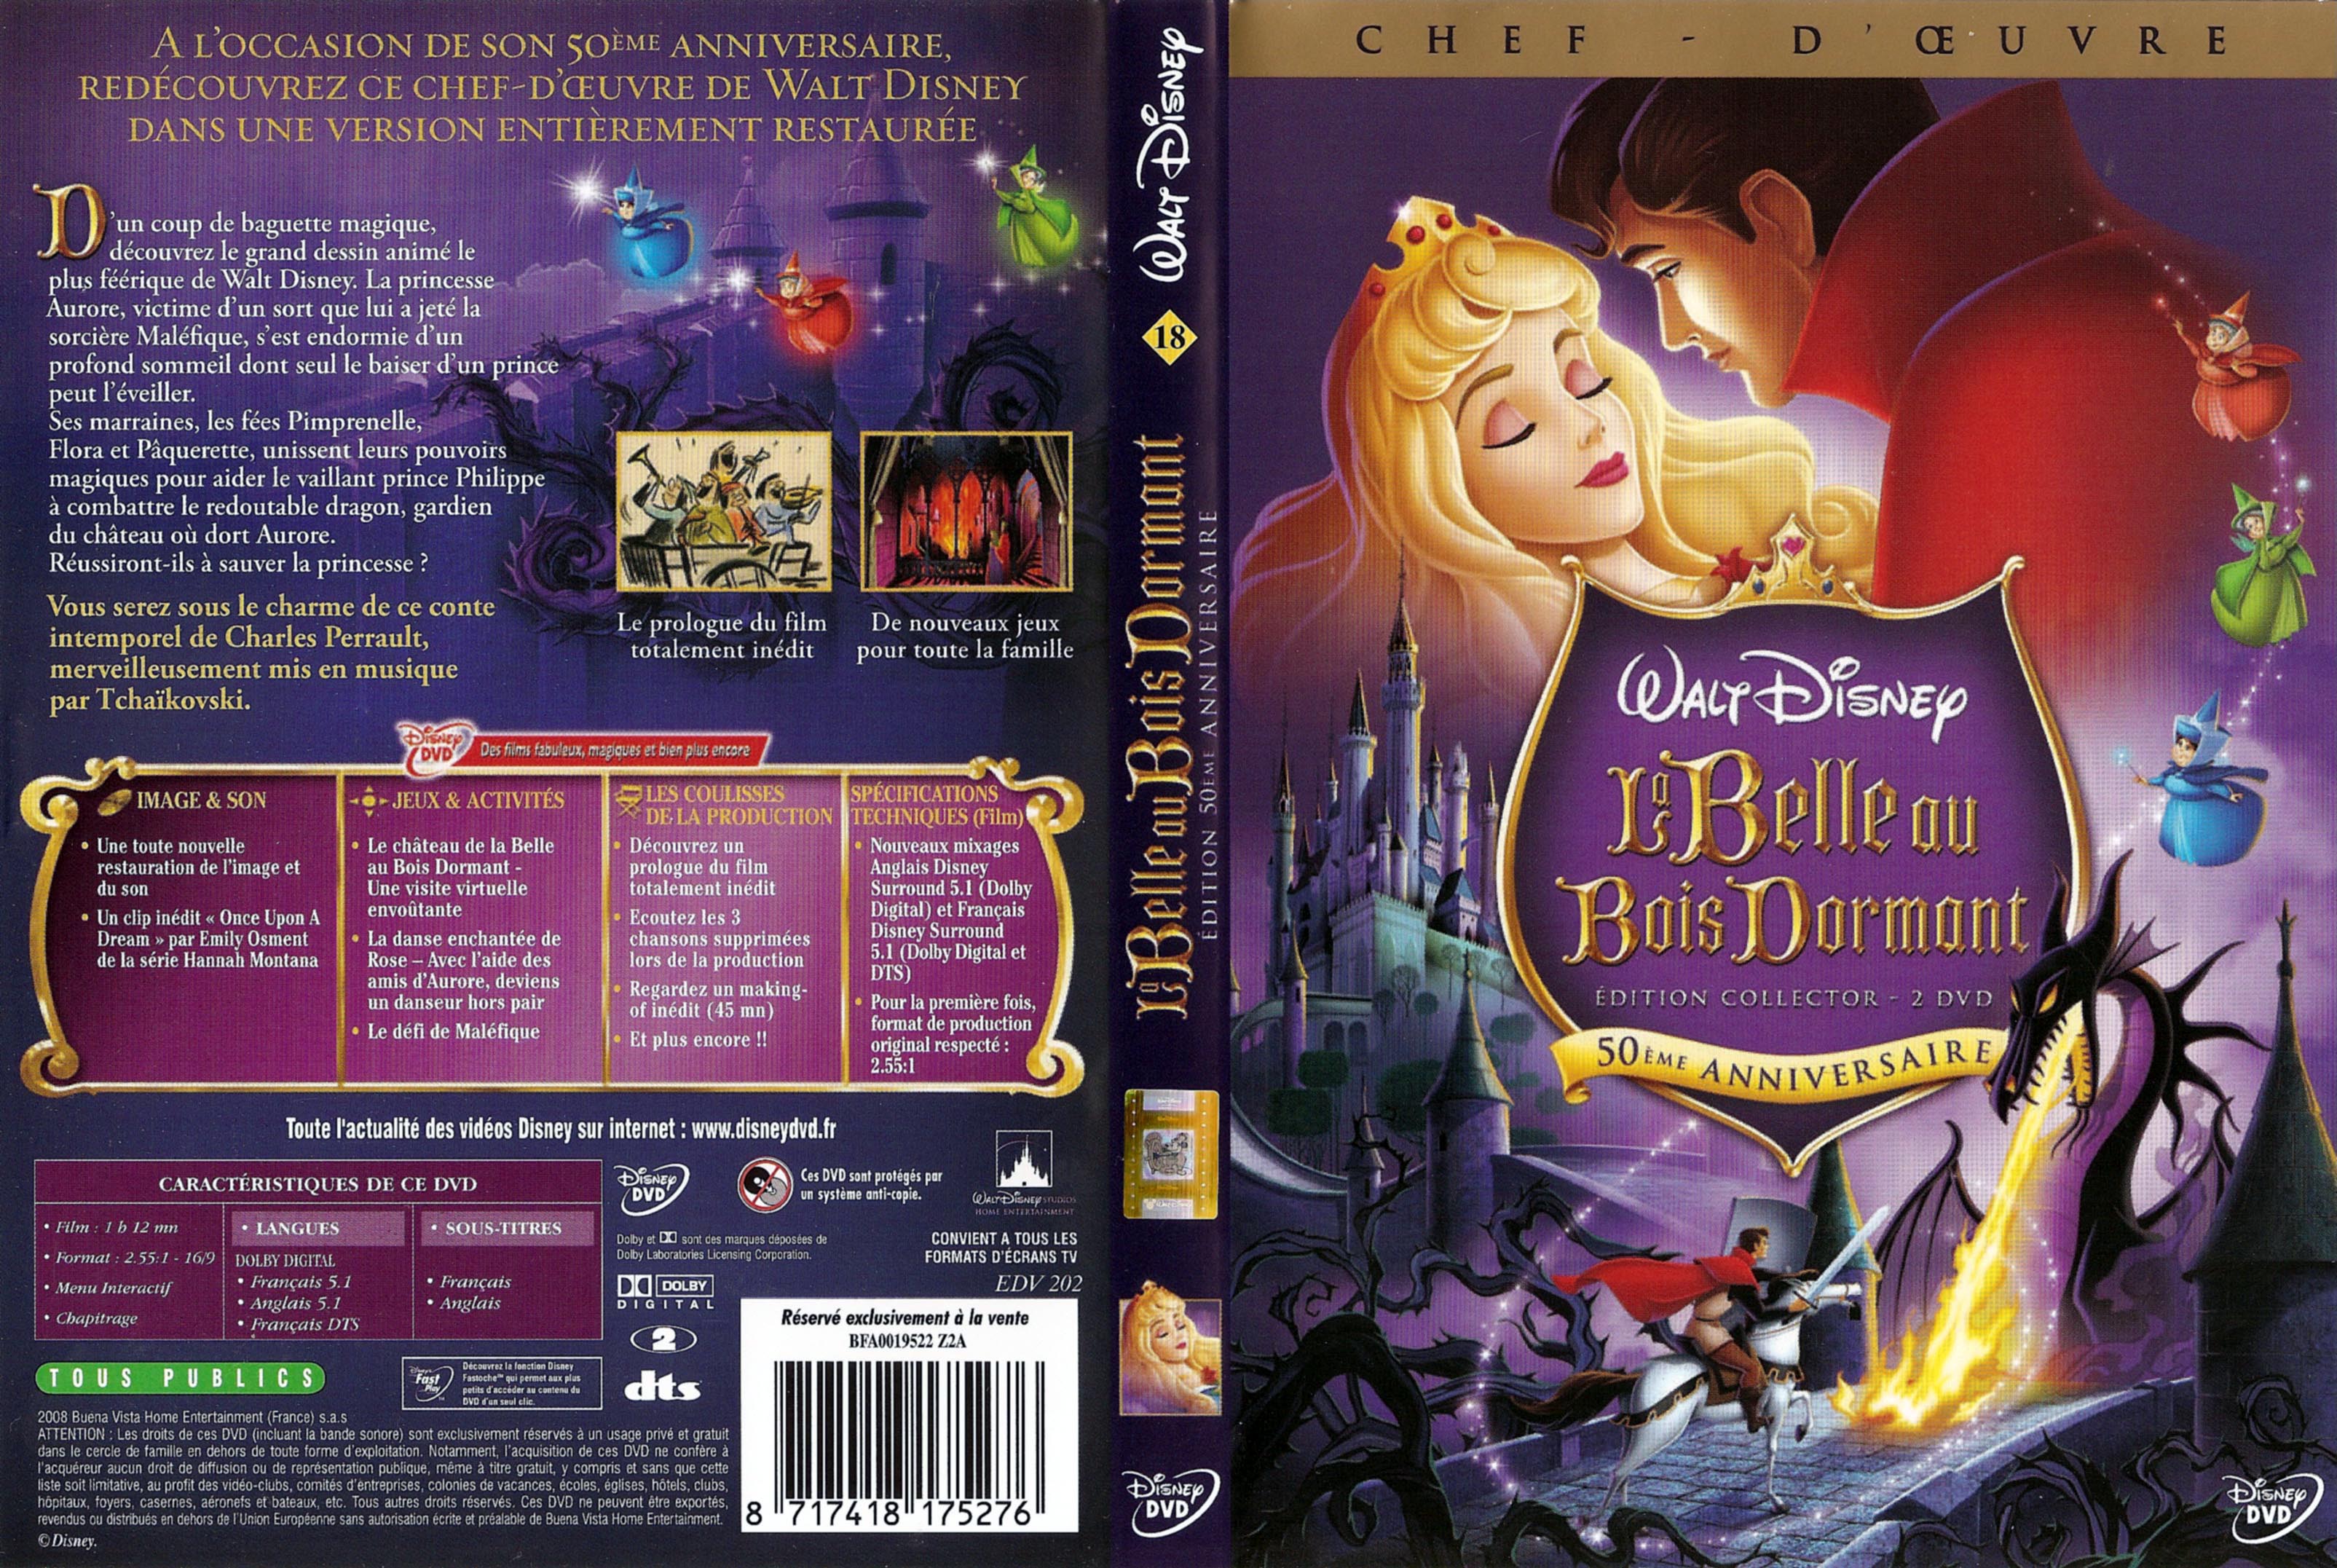 Jaquette DVD La belle au bois dormant v4